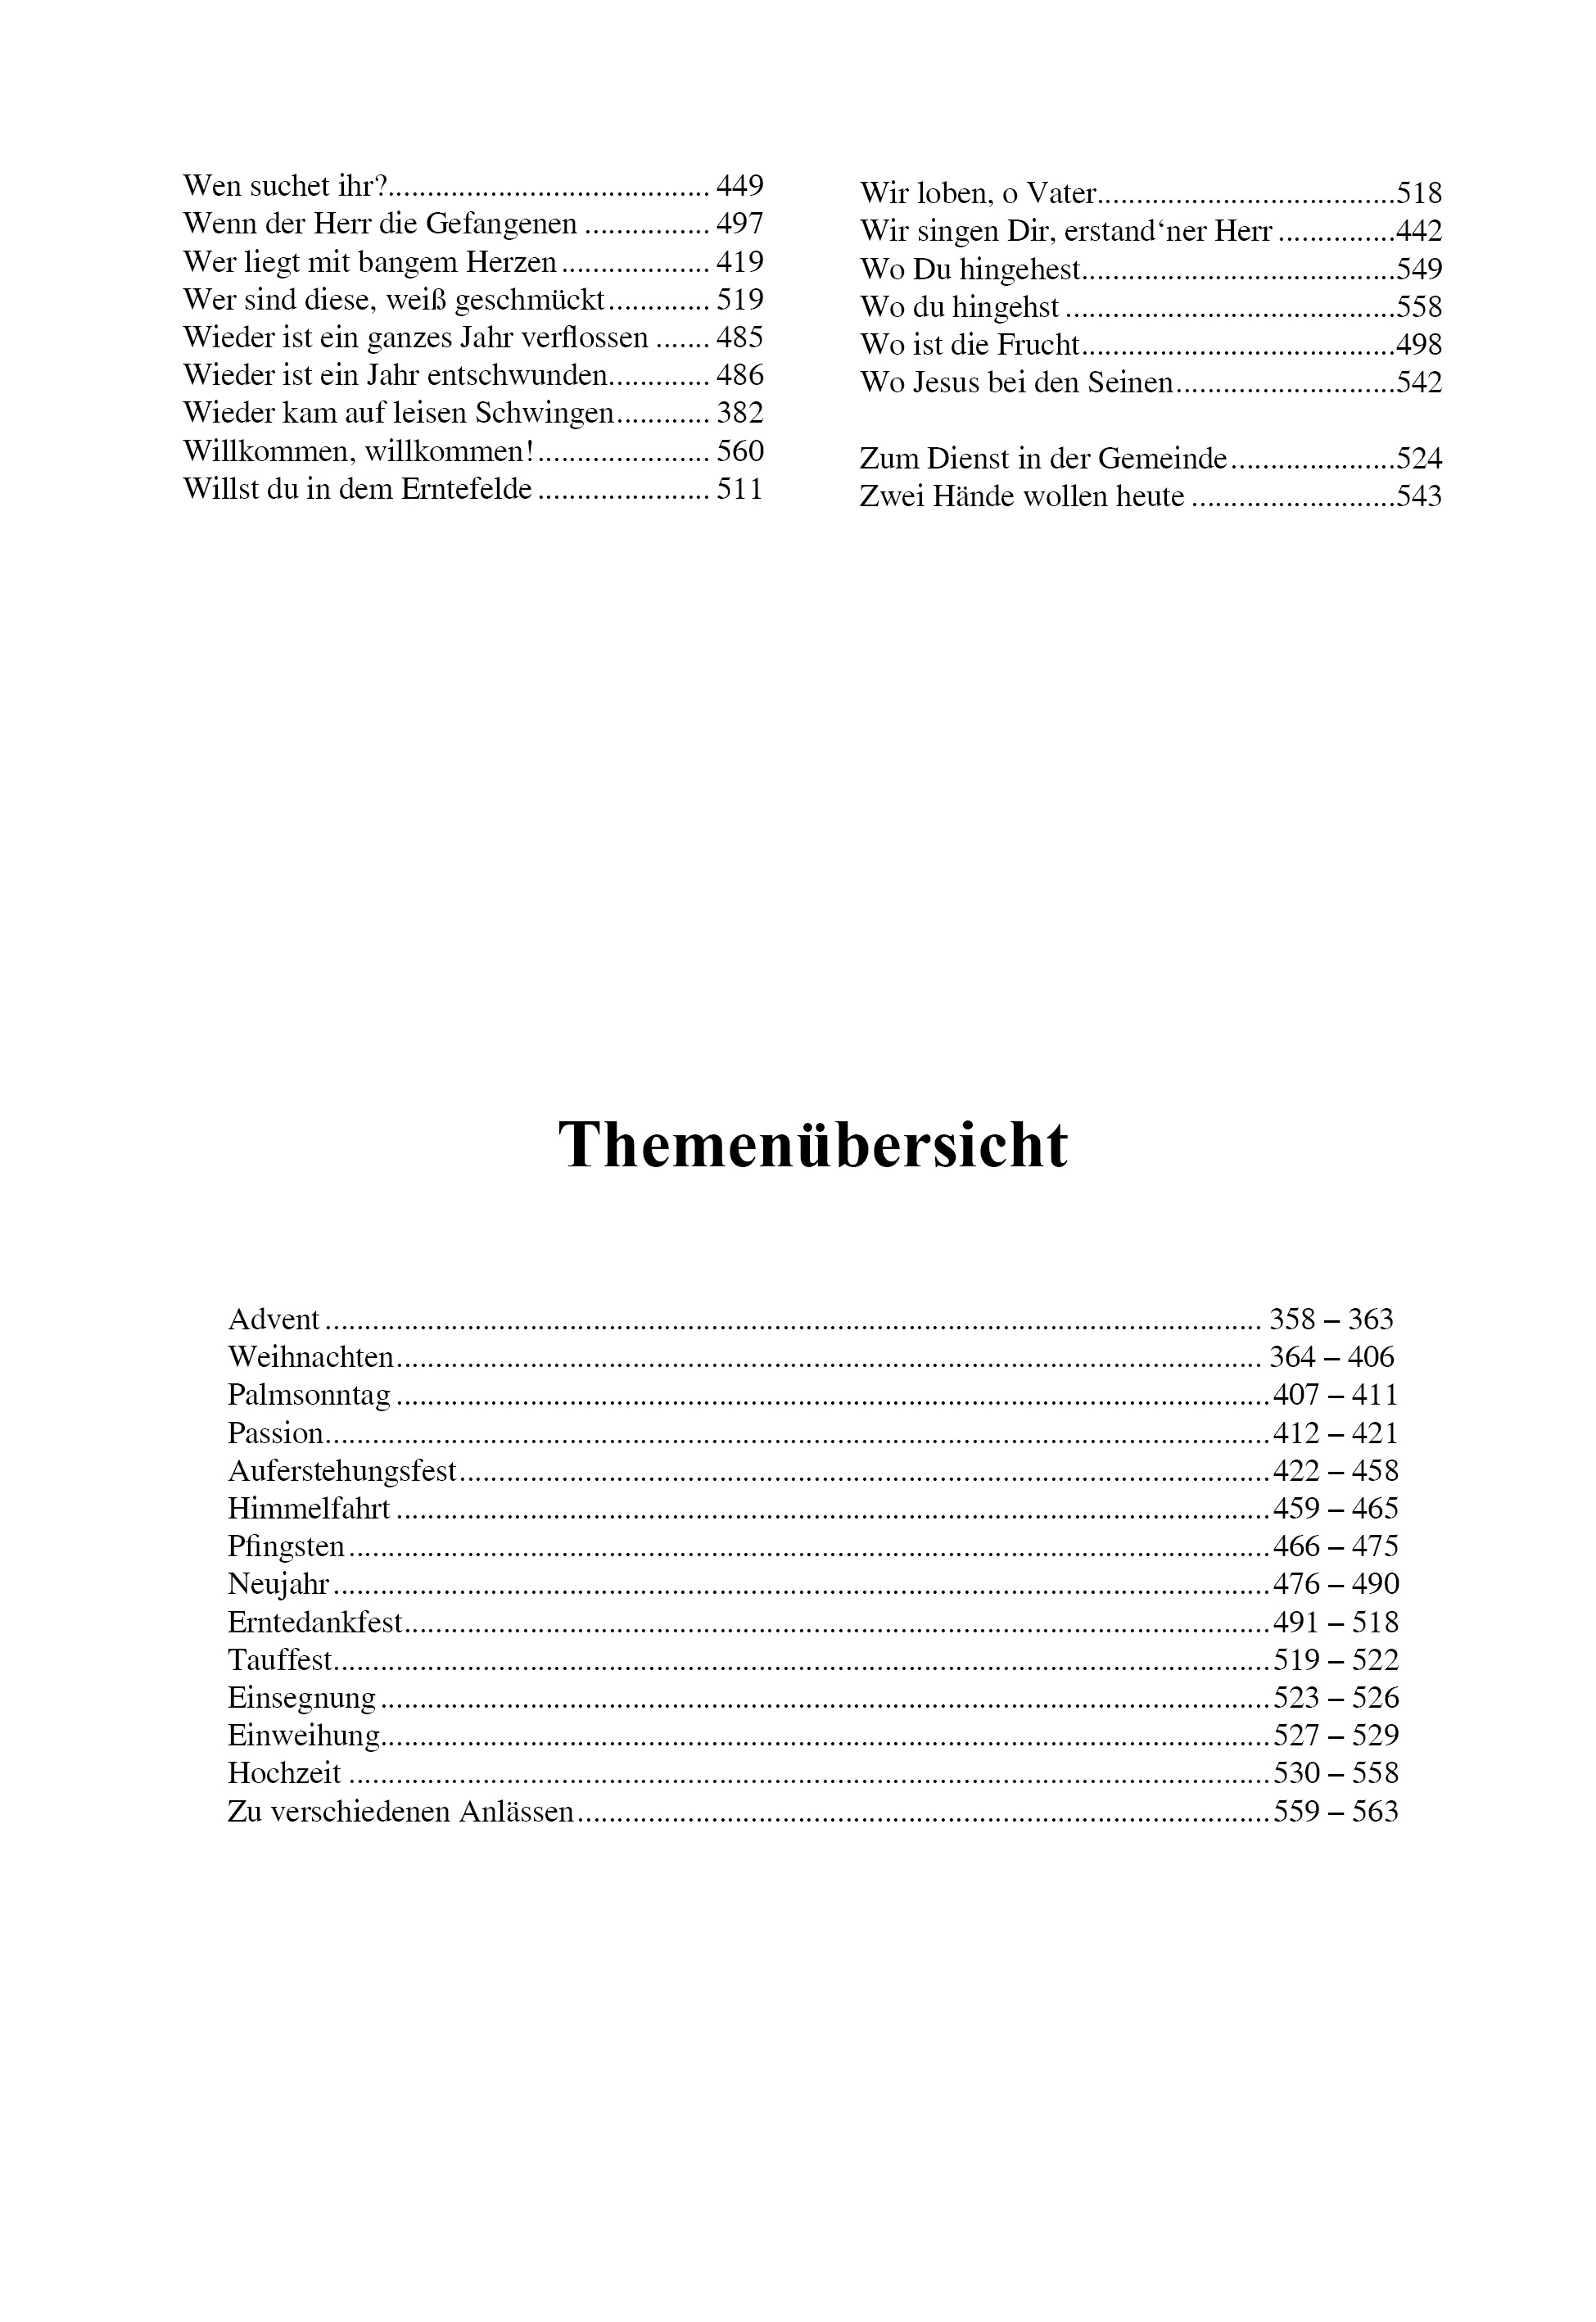 Chorliederbuch III